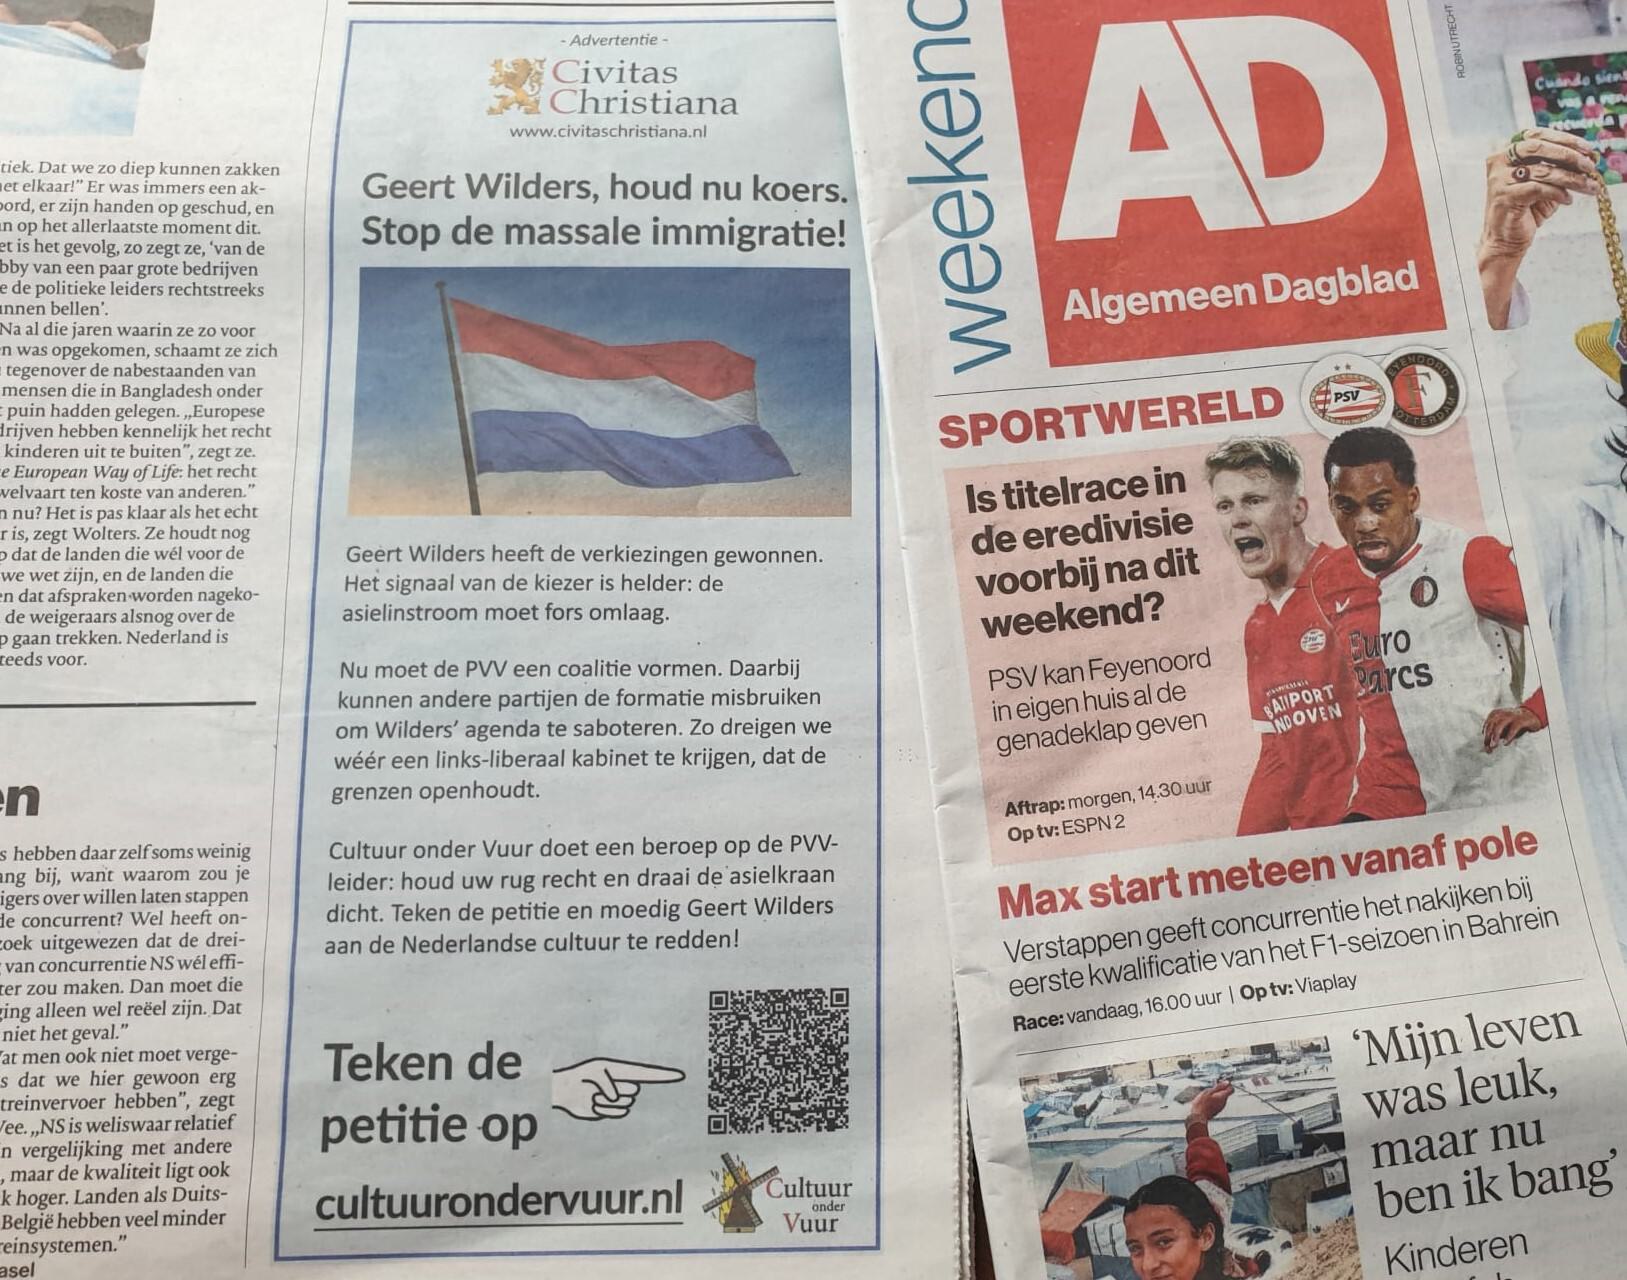 Advertentie in Algemeen Dagblad: Wilders, draai de asielkraan dicht!